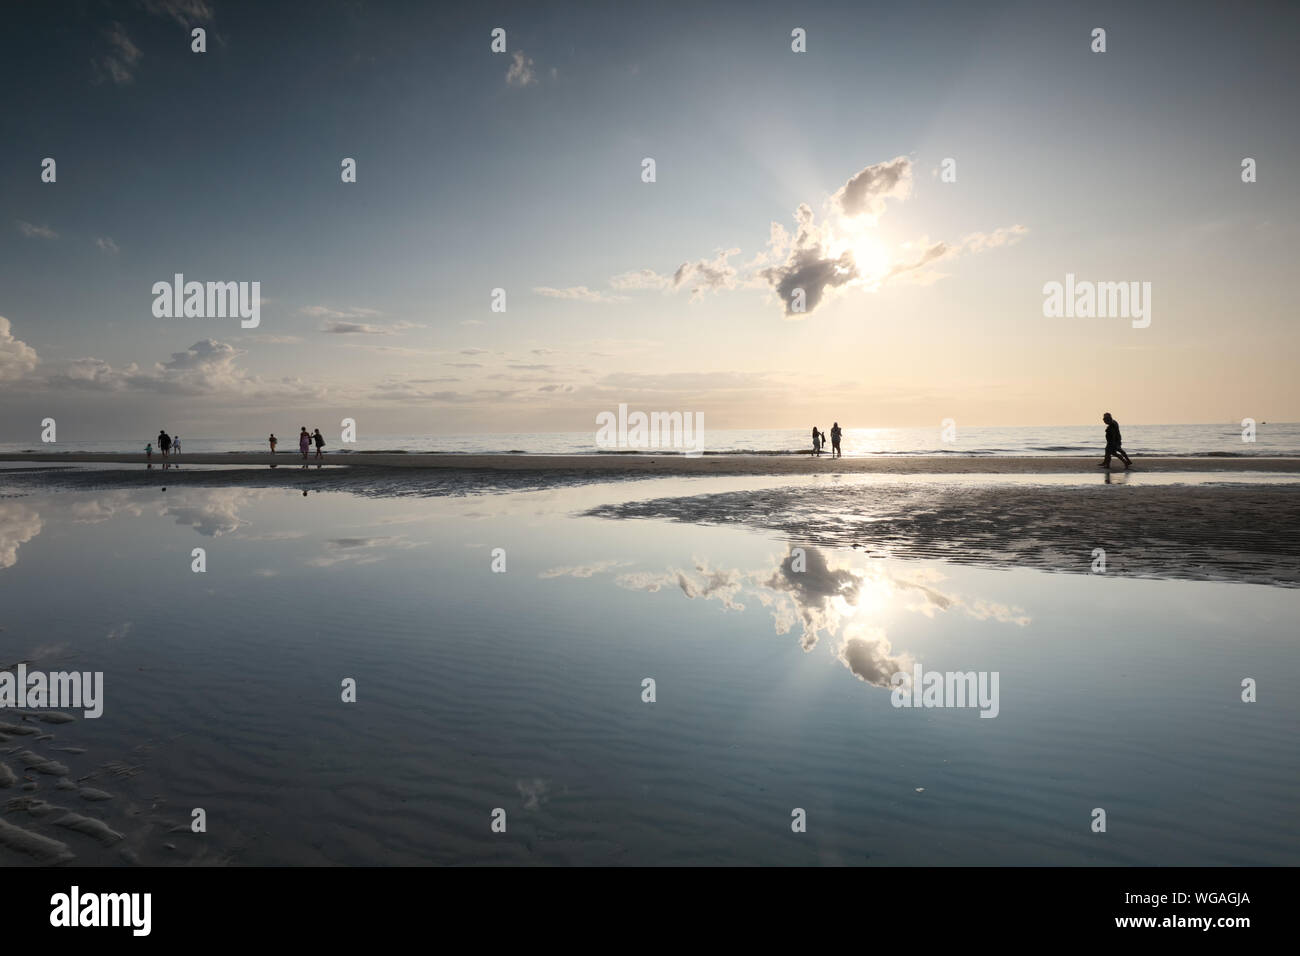 Les gens silhouettes sur la plage de sable de la mer sous le soleil en été Banque D'Images